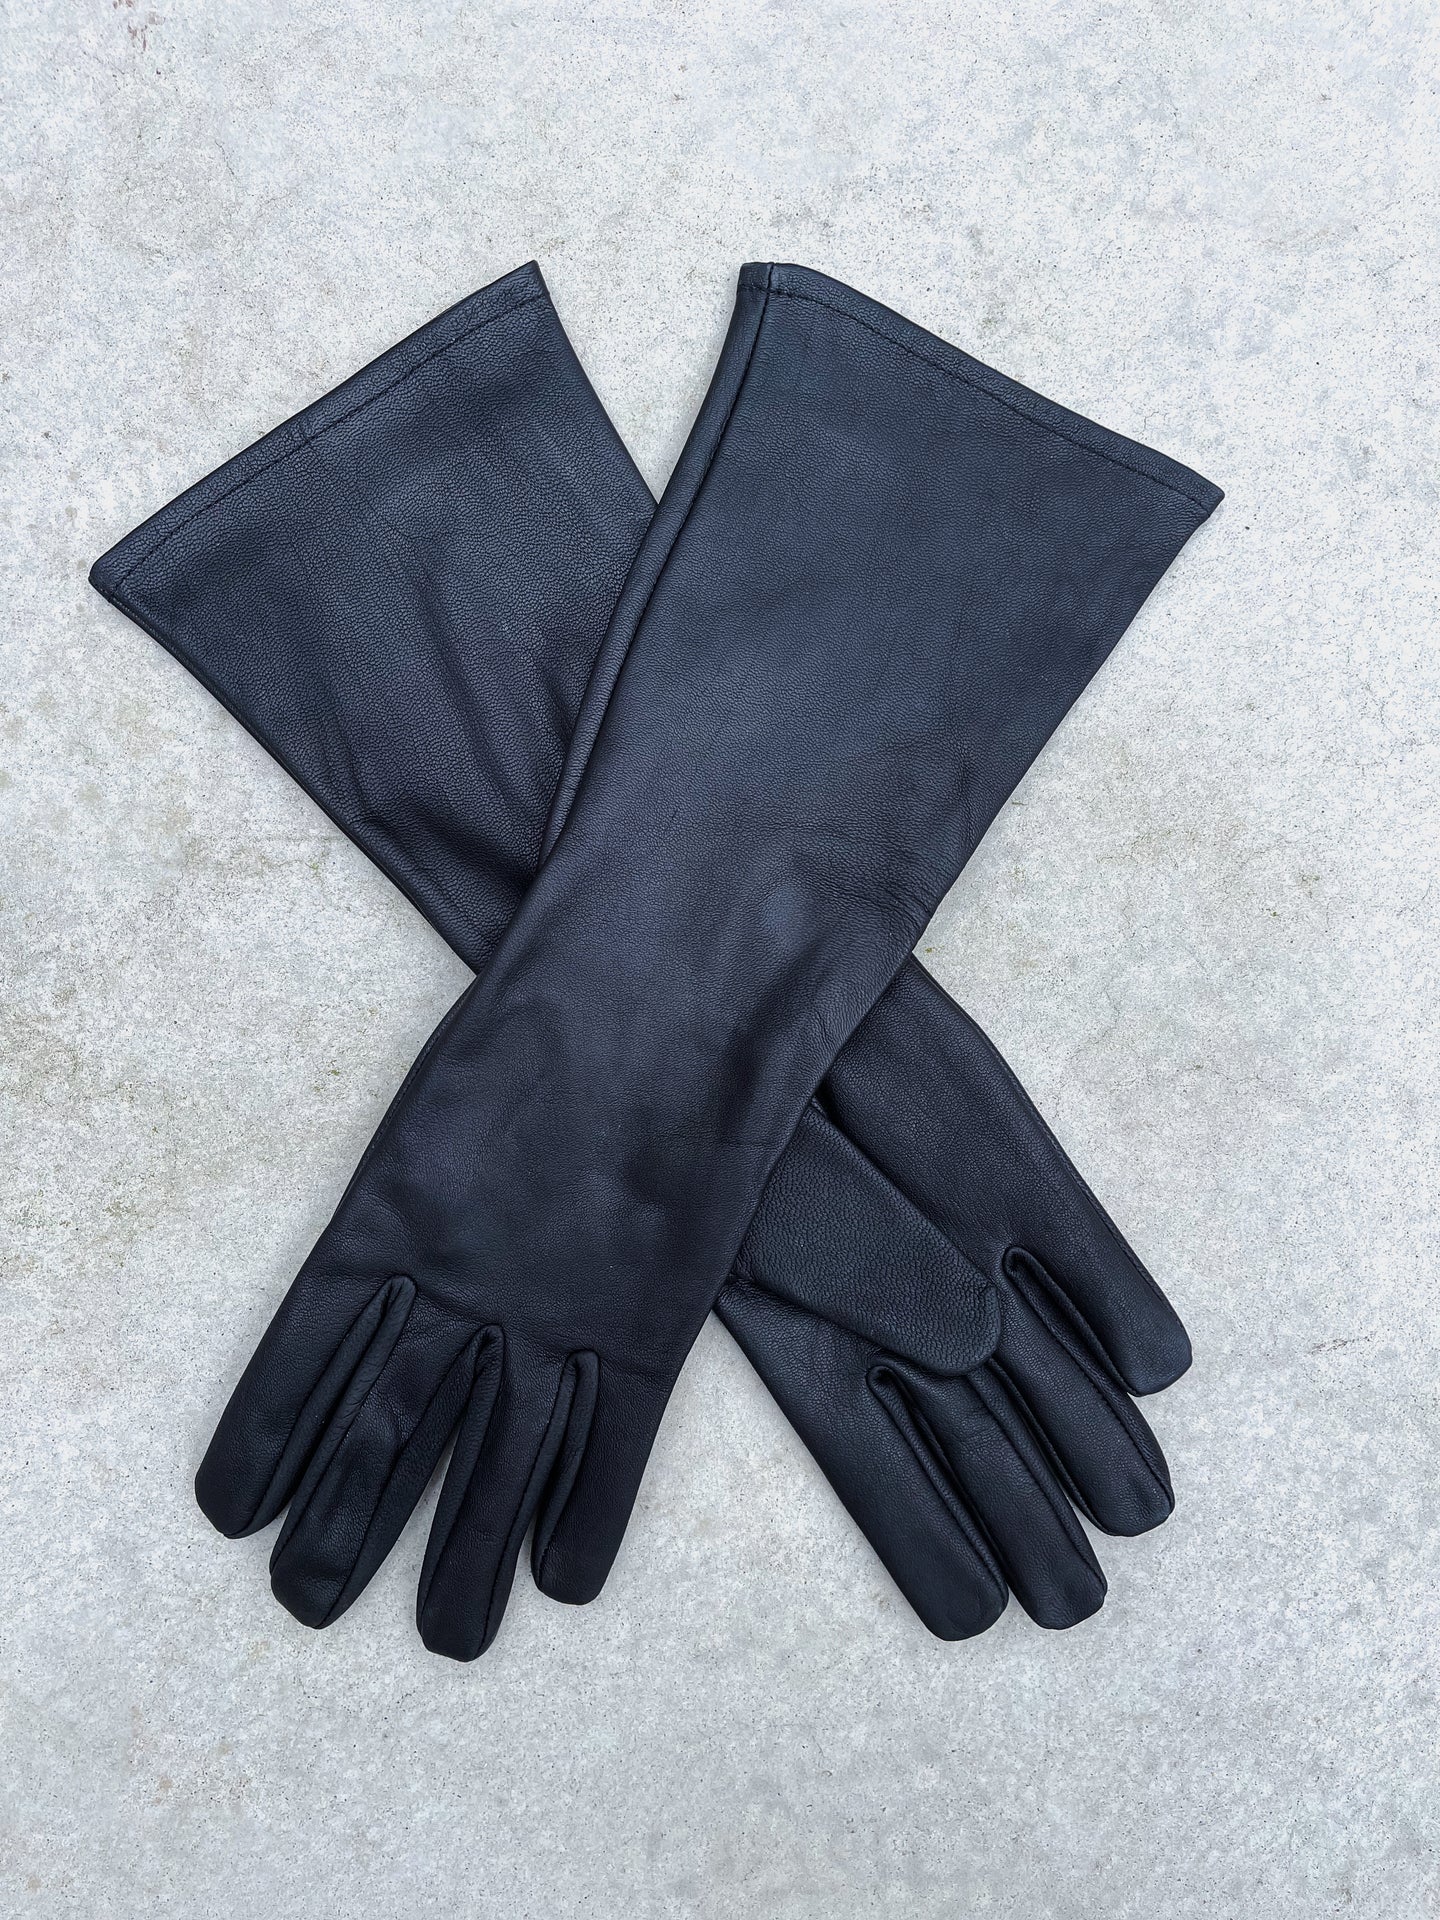 Super hero long gauntlet leather gloves